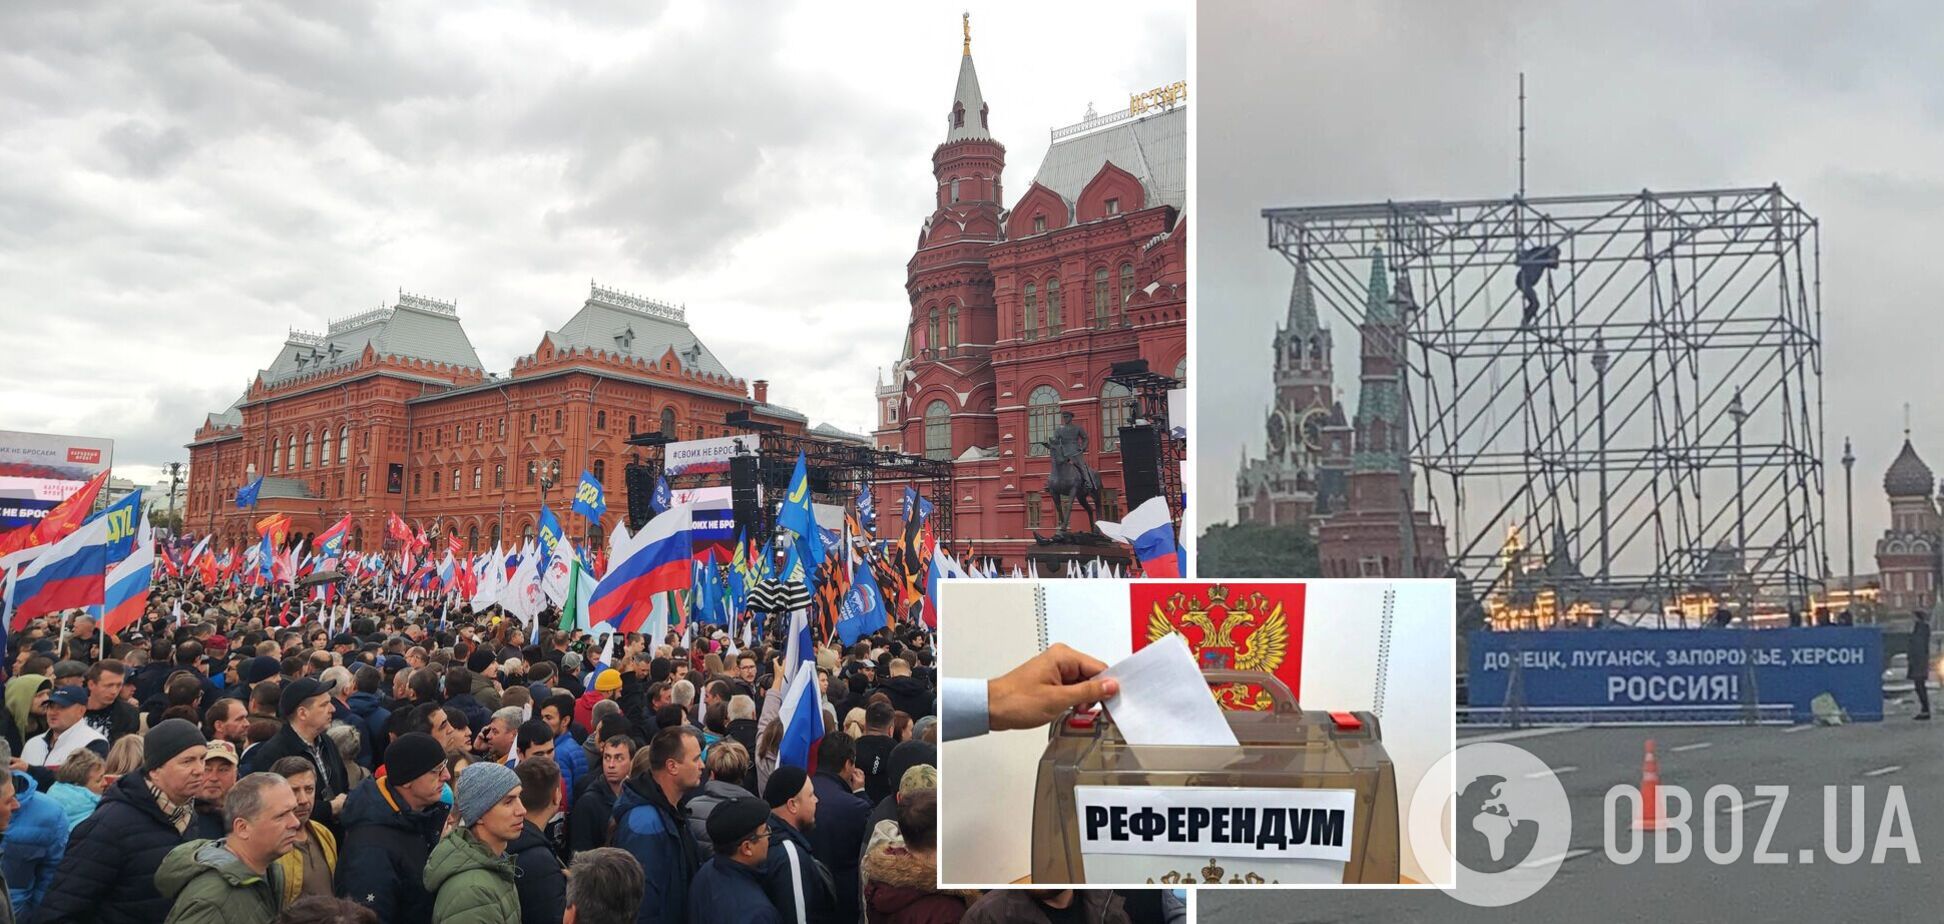 Пропагандисты готовят праздник в столице РФ по случаю 'референдума'